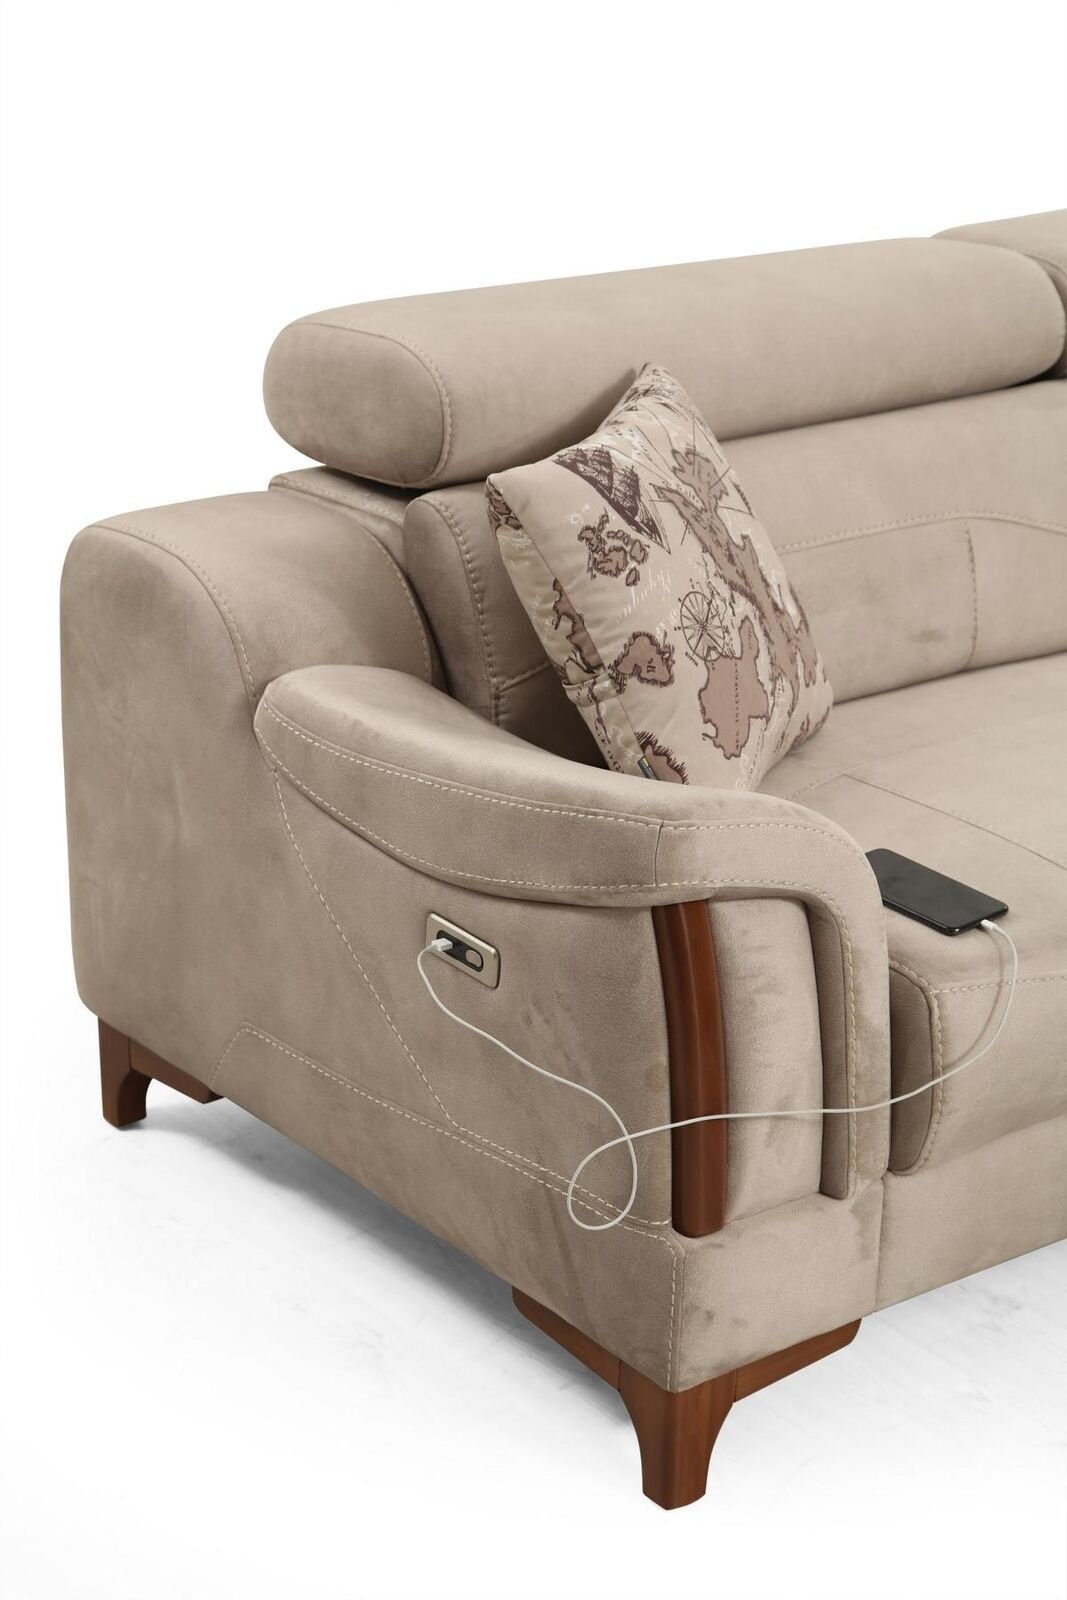 JVmoebel 2-Sitzer Modern Designer Neu Polster Made Textil, Wohnzimmer in Luxus Möbel Europa